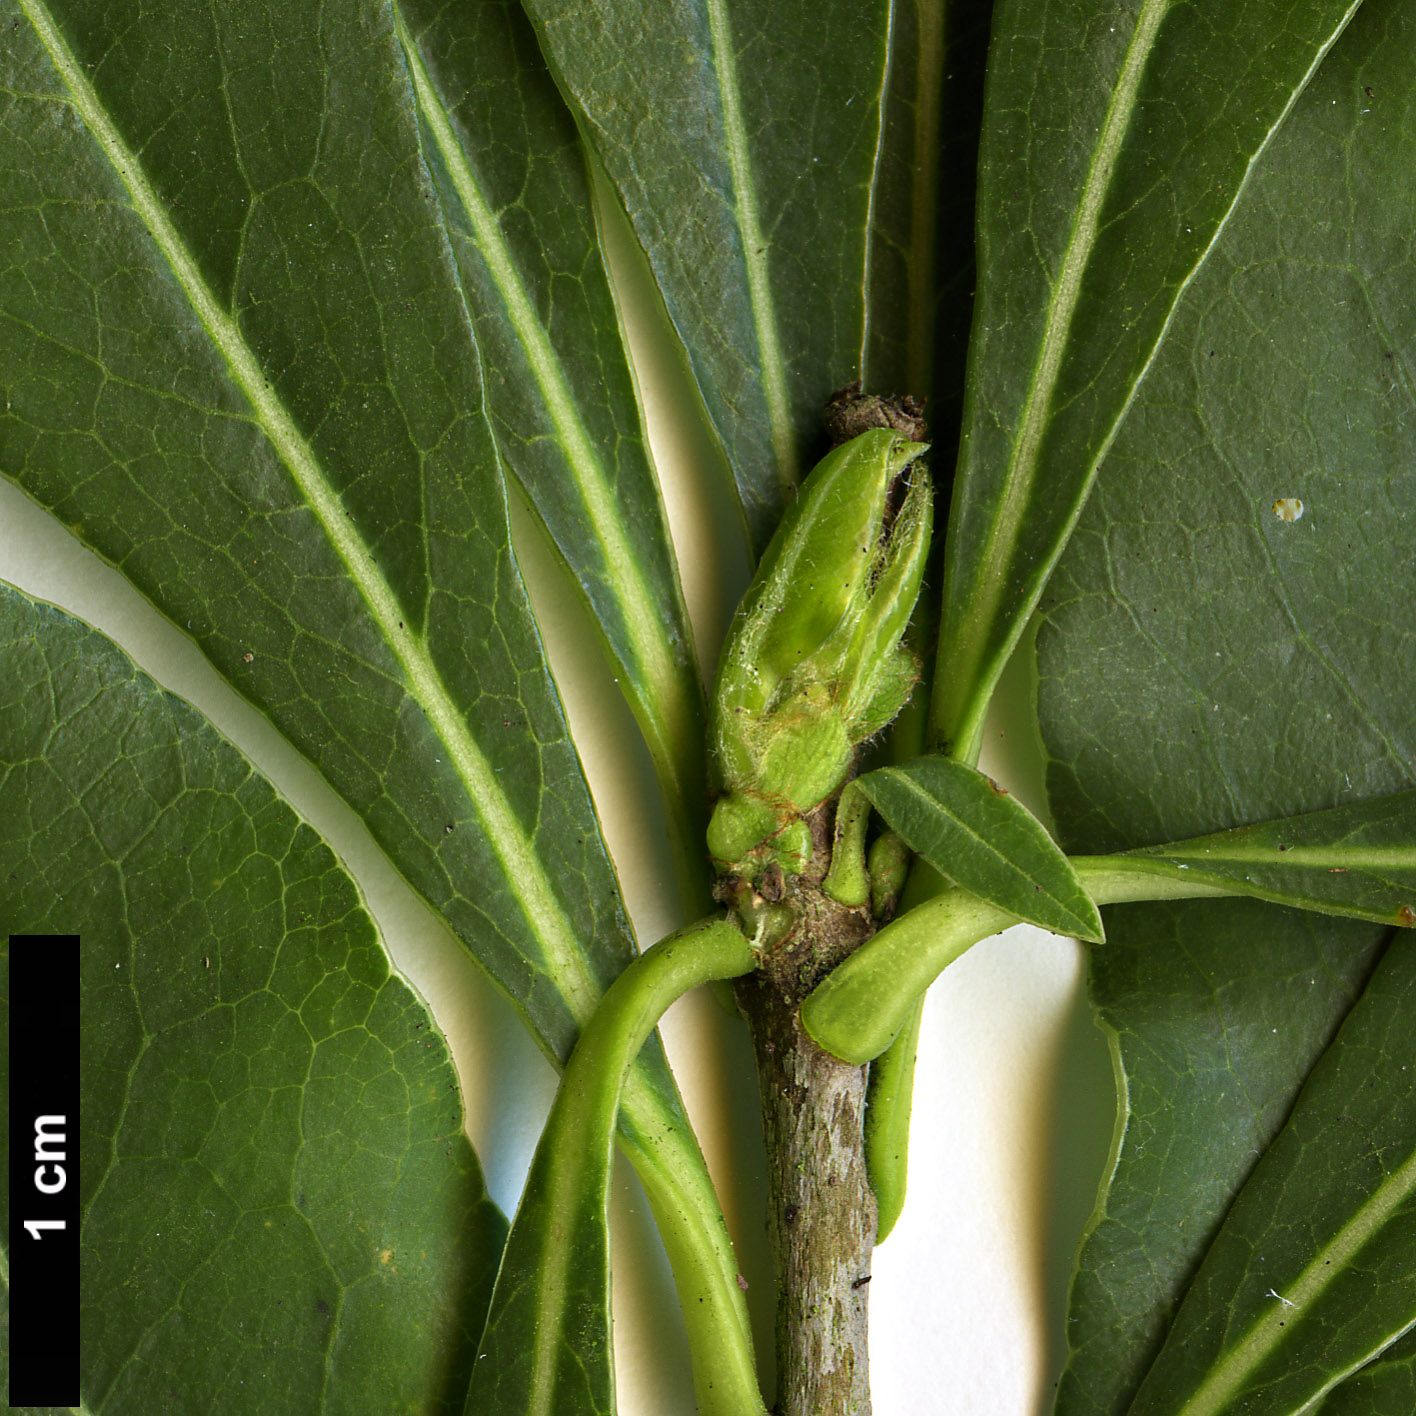 High resolution image: Family: Pittosporaceae - Genus: Pittosporum - Taxon: truncatum